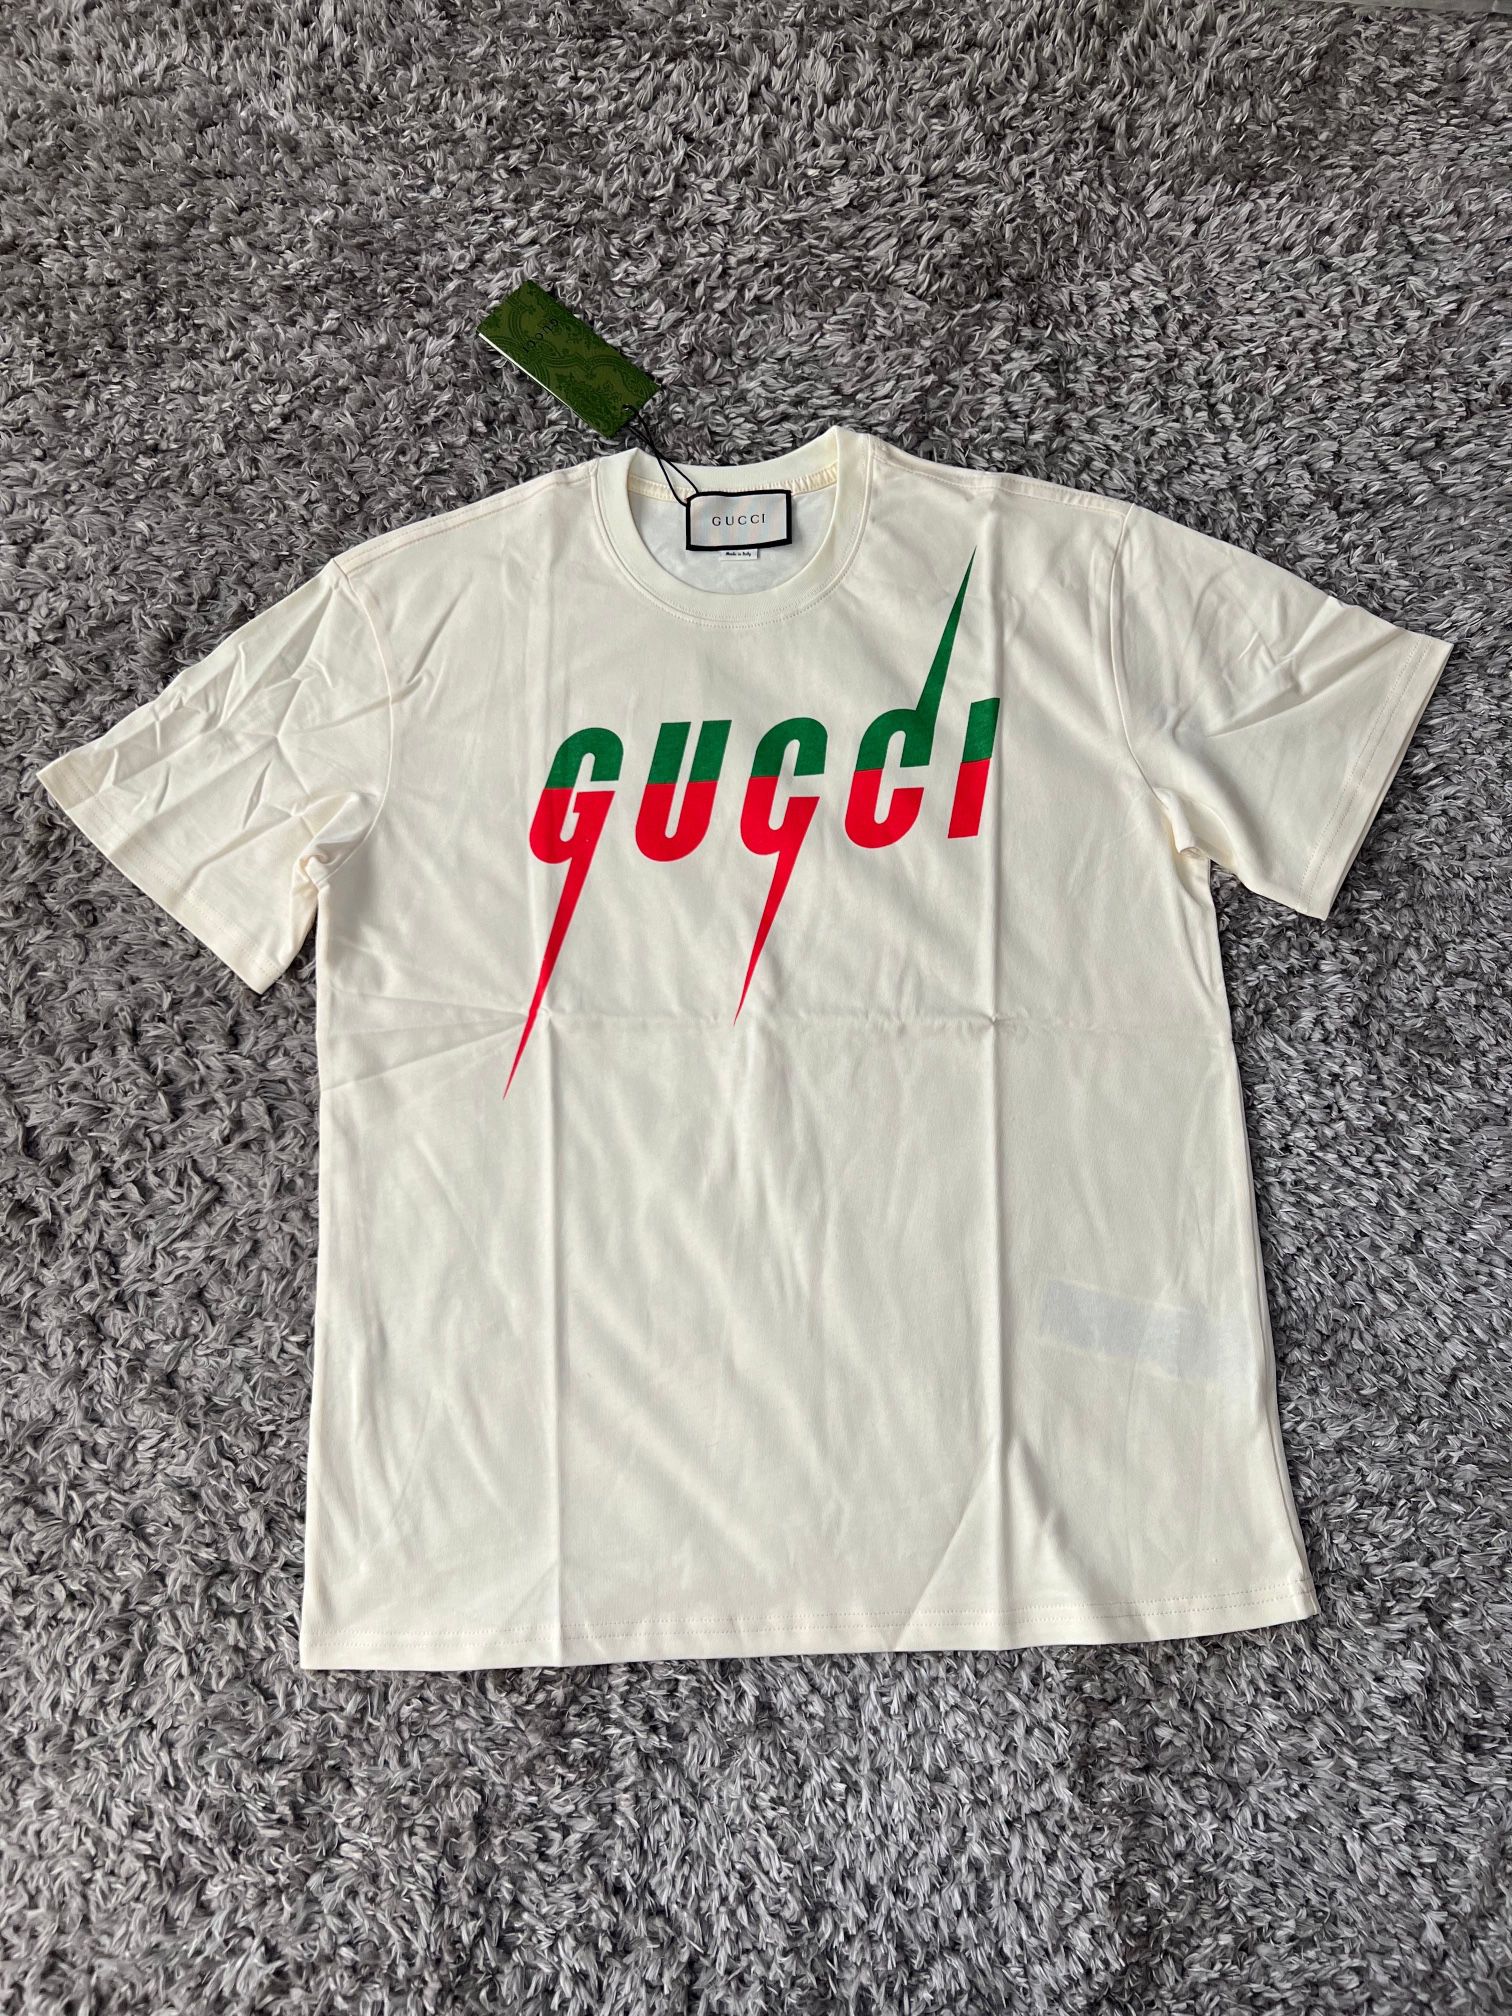 Gucci t shirt sizes S & M (READ DESCRIPTION!)